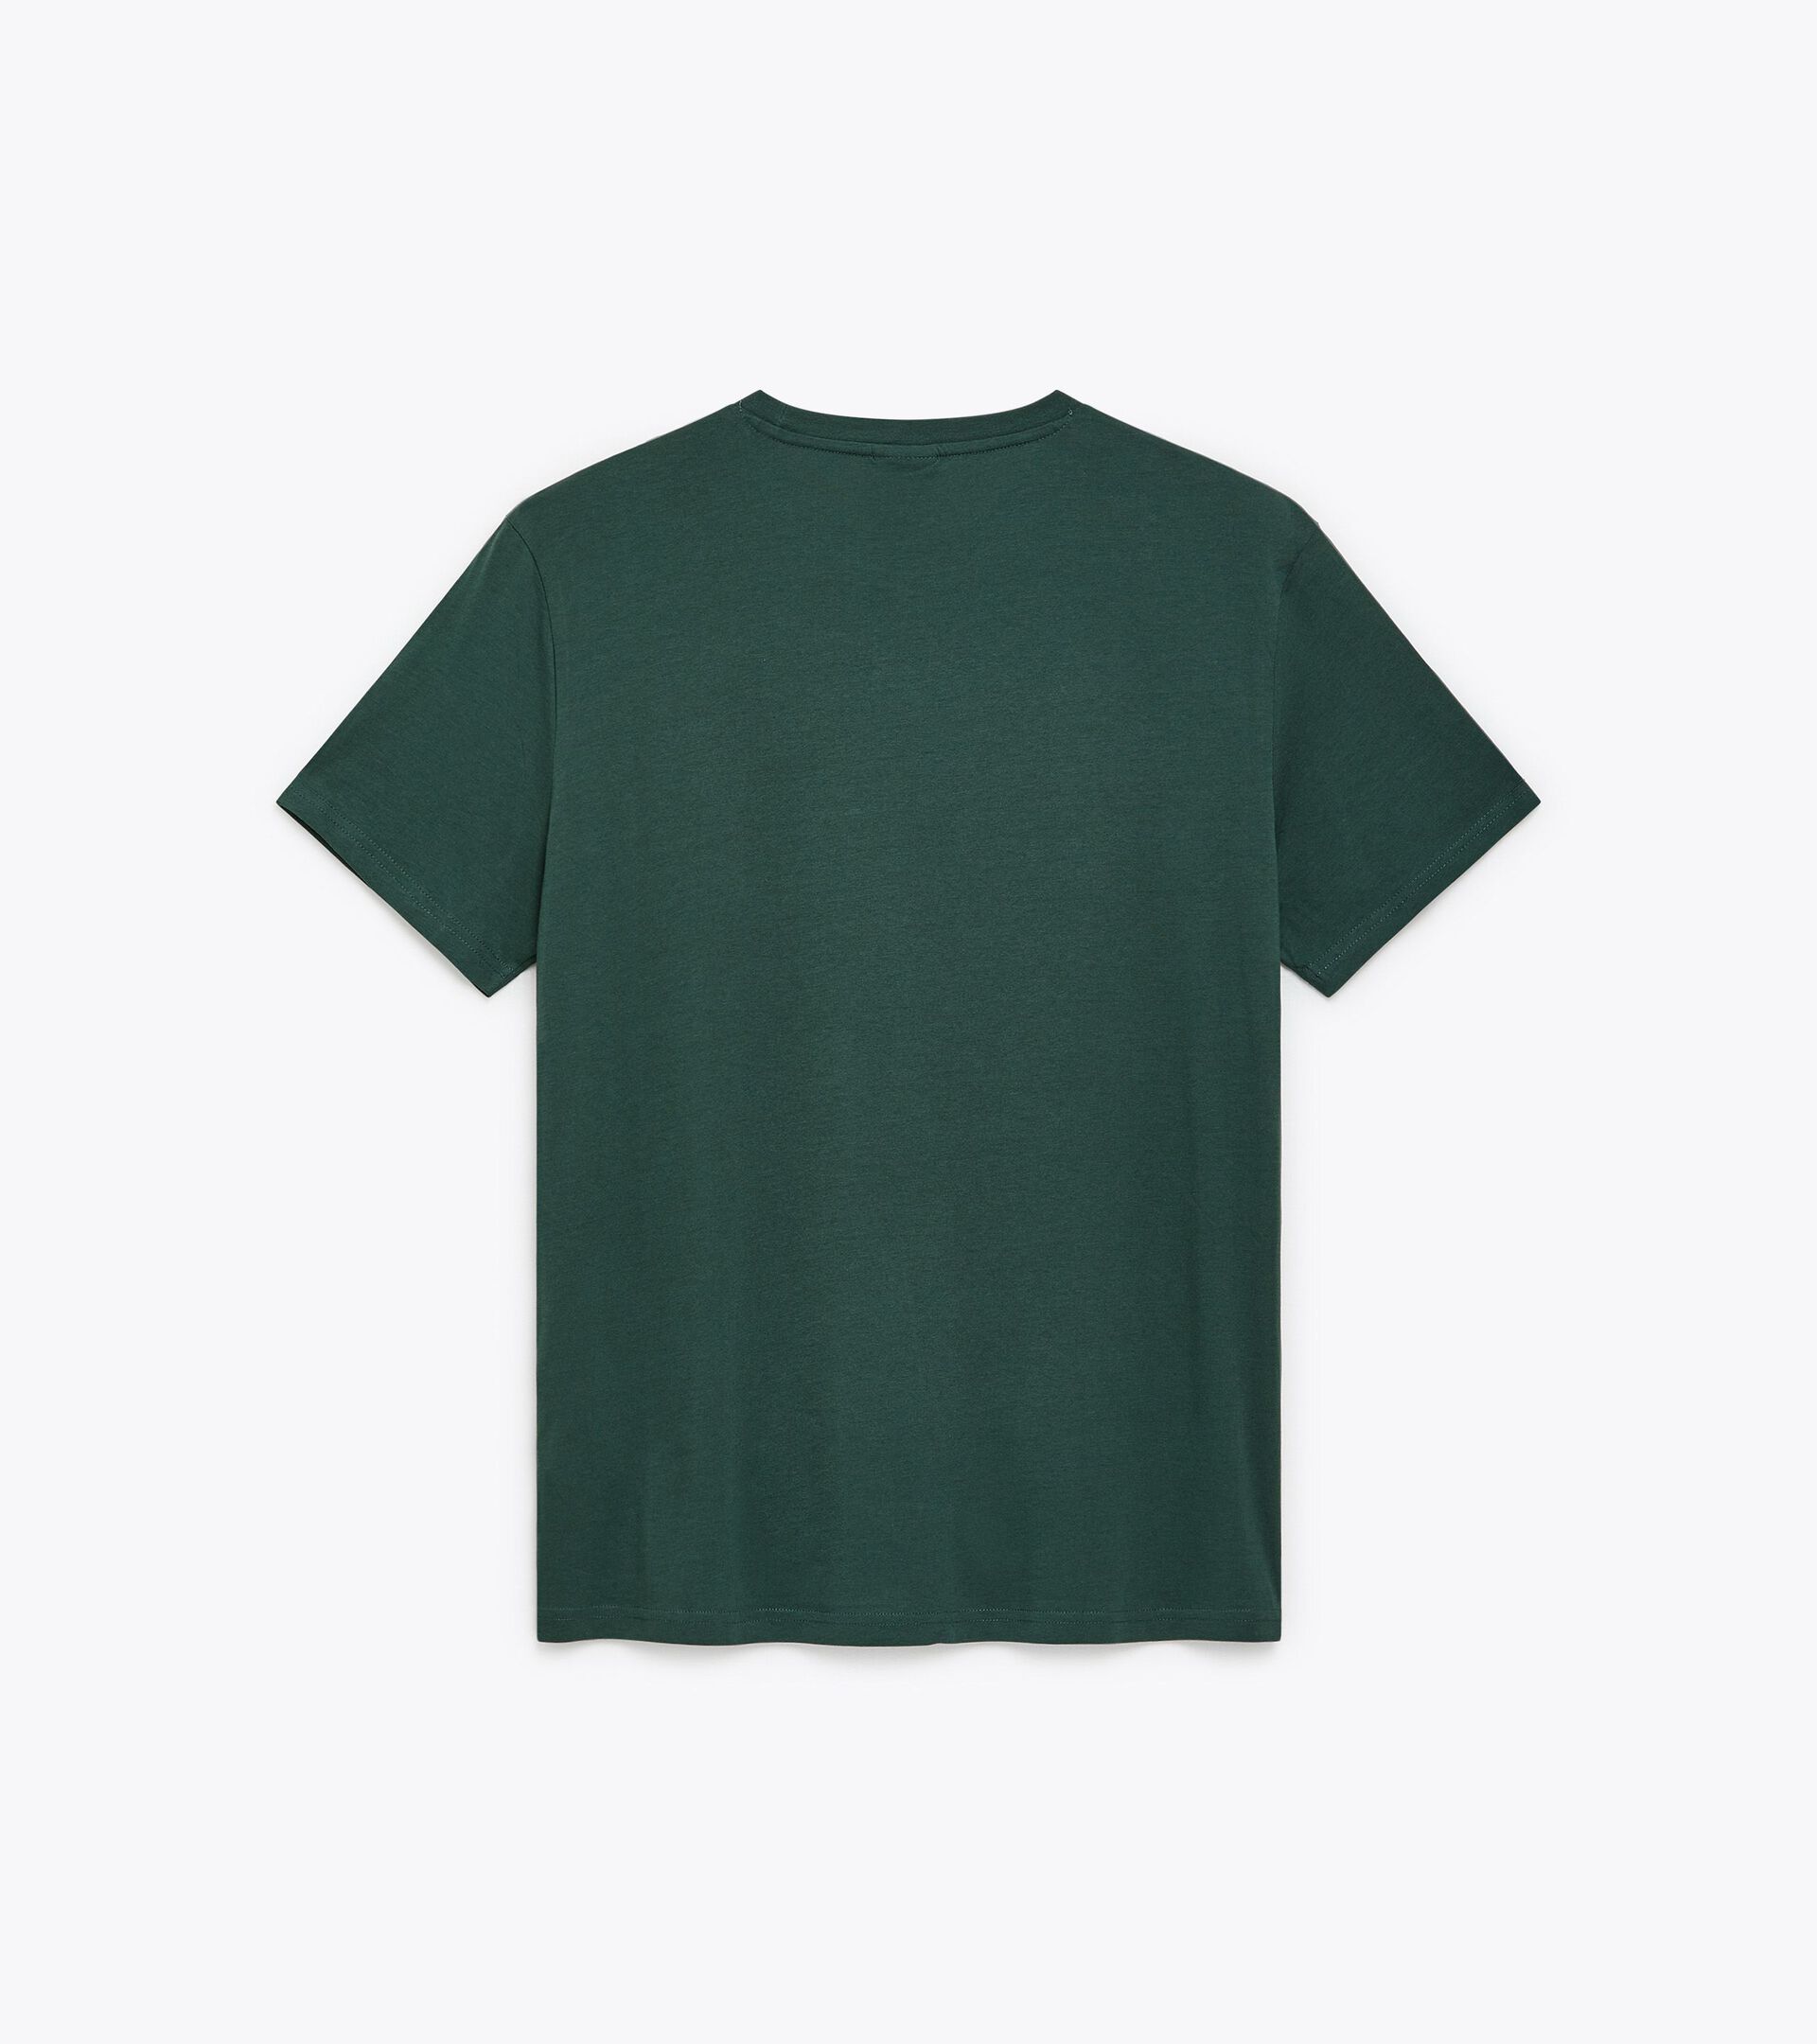 Camiseta deportiva - Hombre T-SHIRT SS CORE AGUJA DE PINO - Diadora